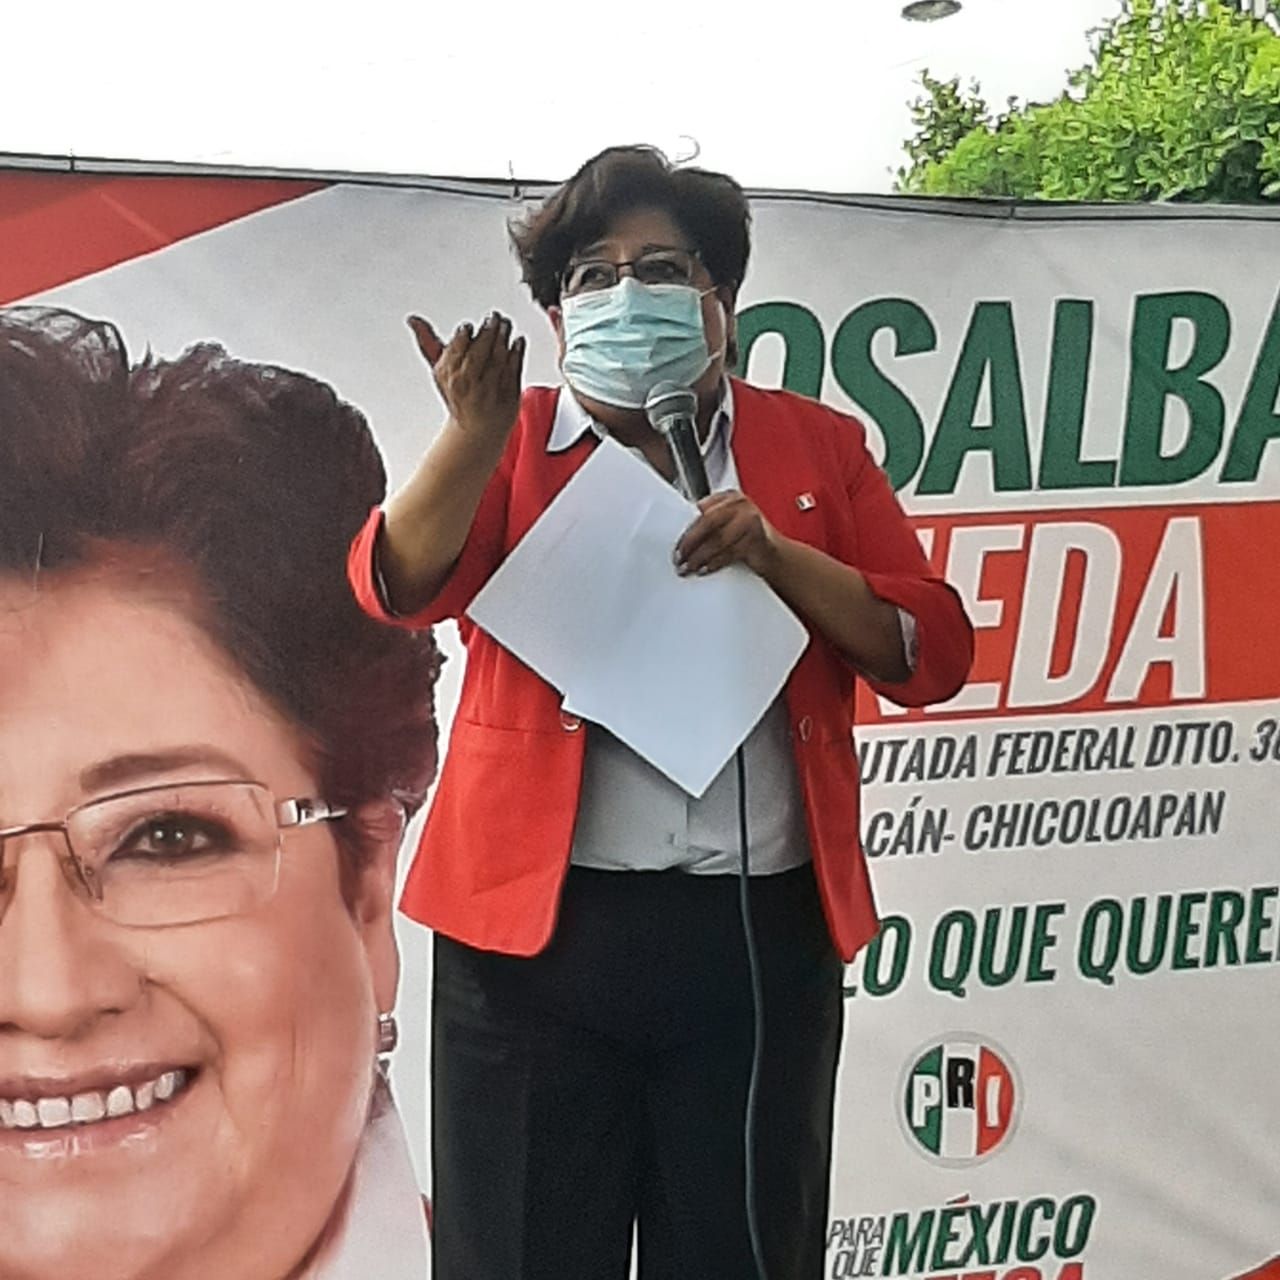 #Urgente recuperar los programas sociales’: Rosalba Pineda Ramírez